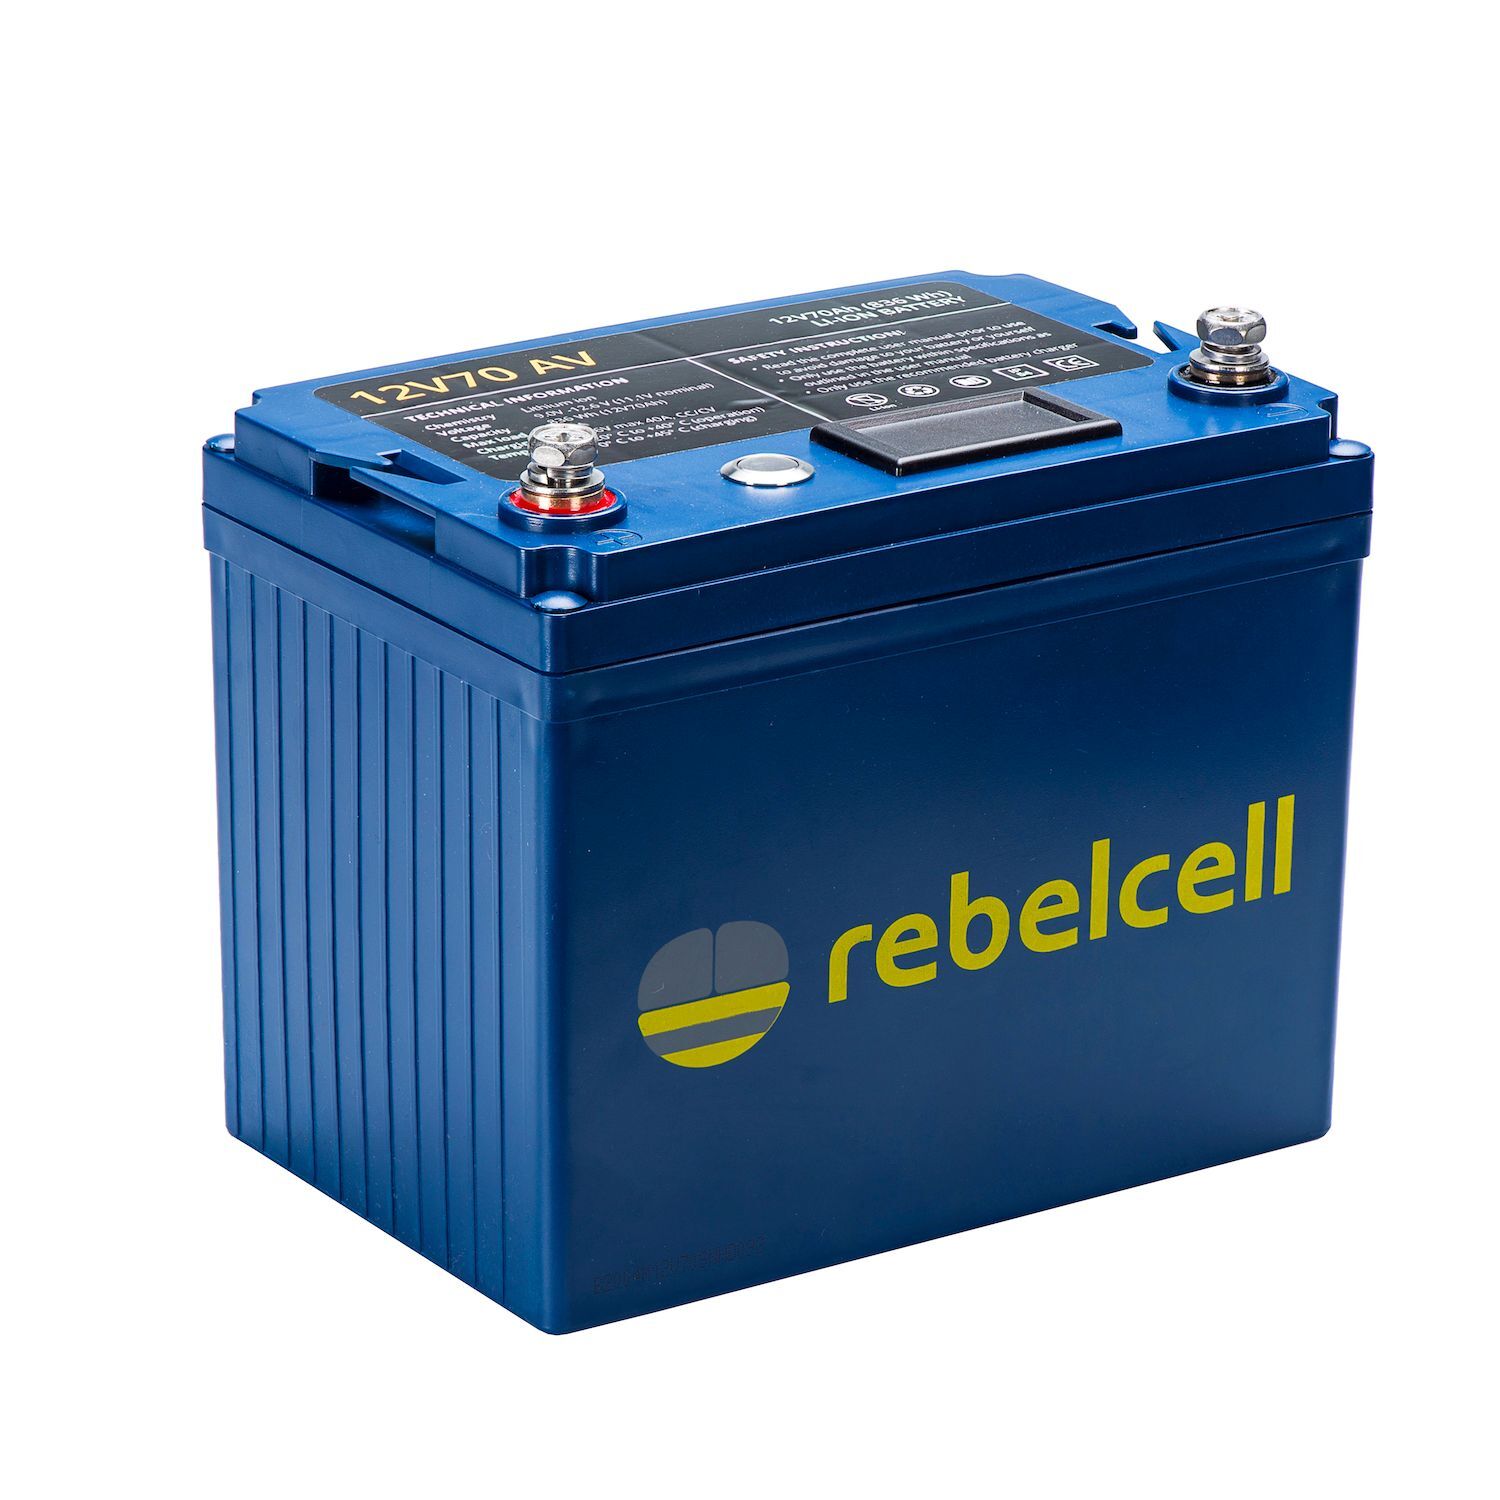 Rebelcell Li-Ion 12V/70A akku jännite/varausnäytöllä